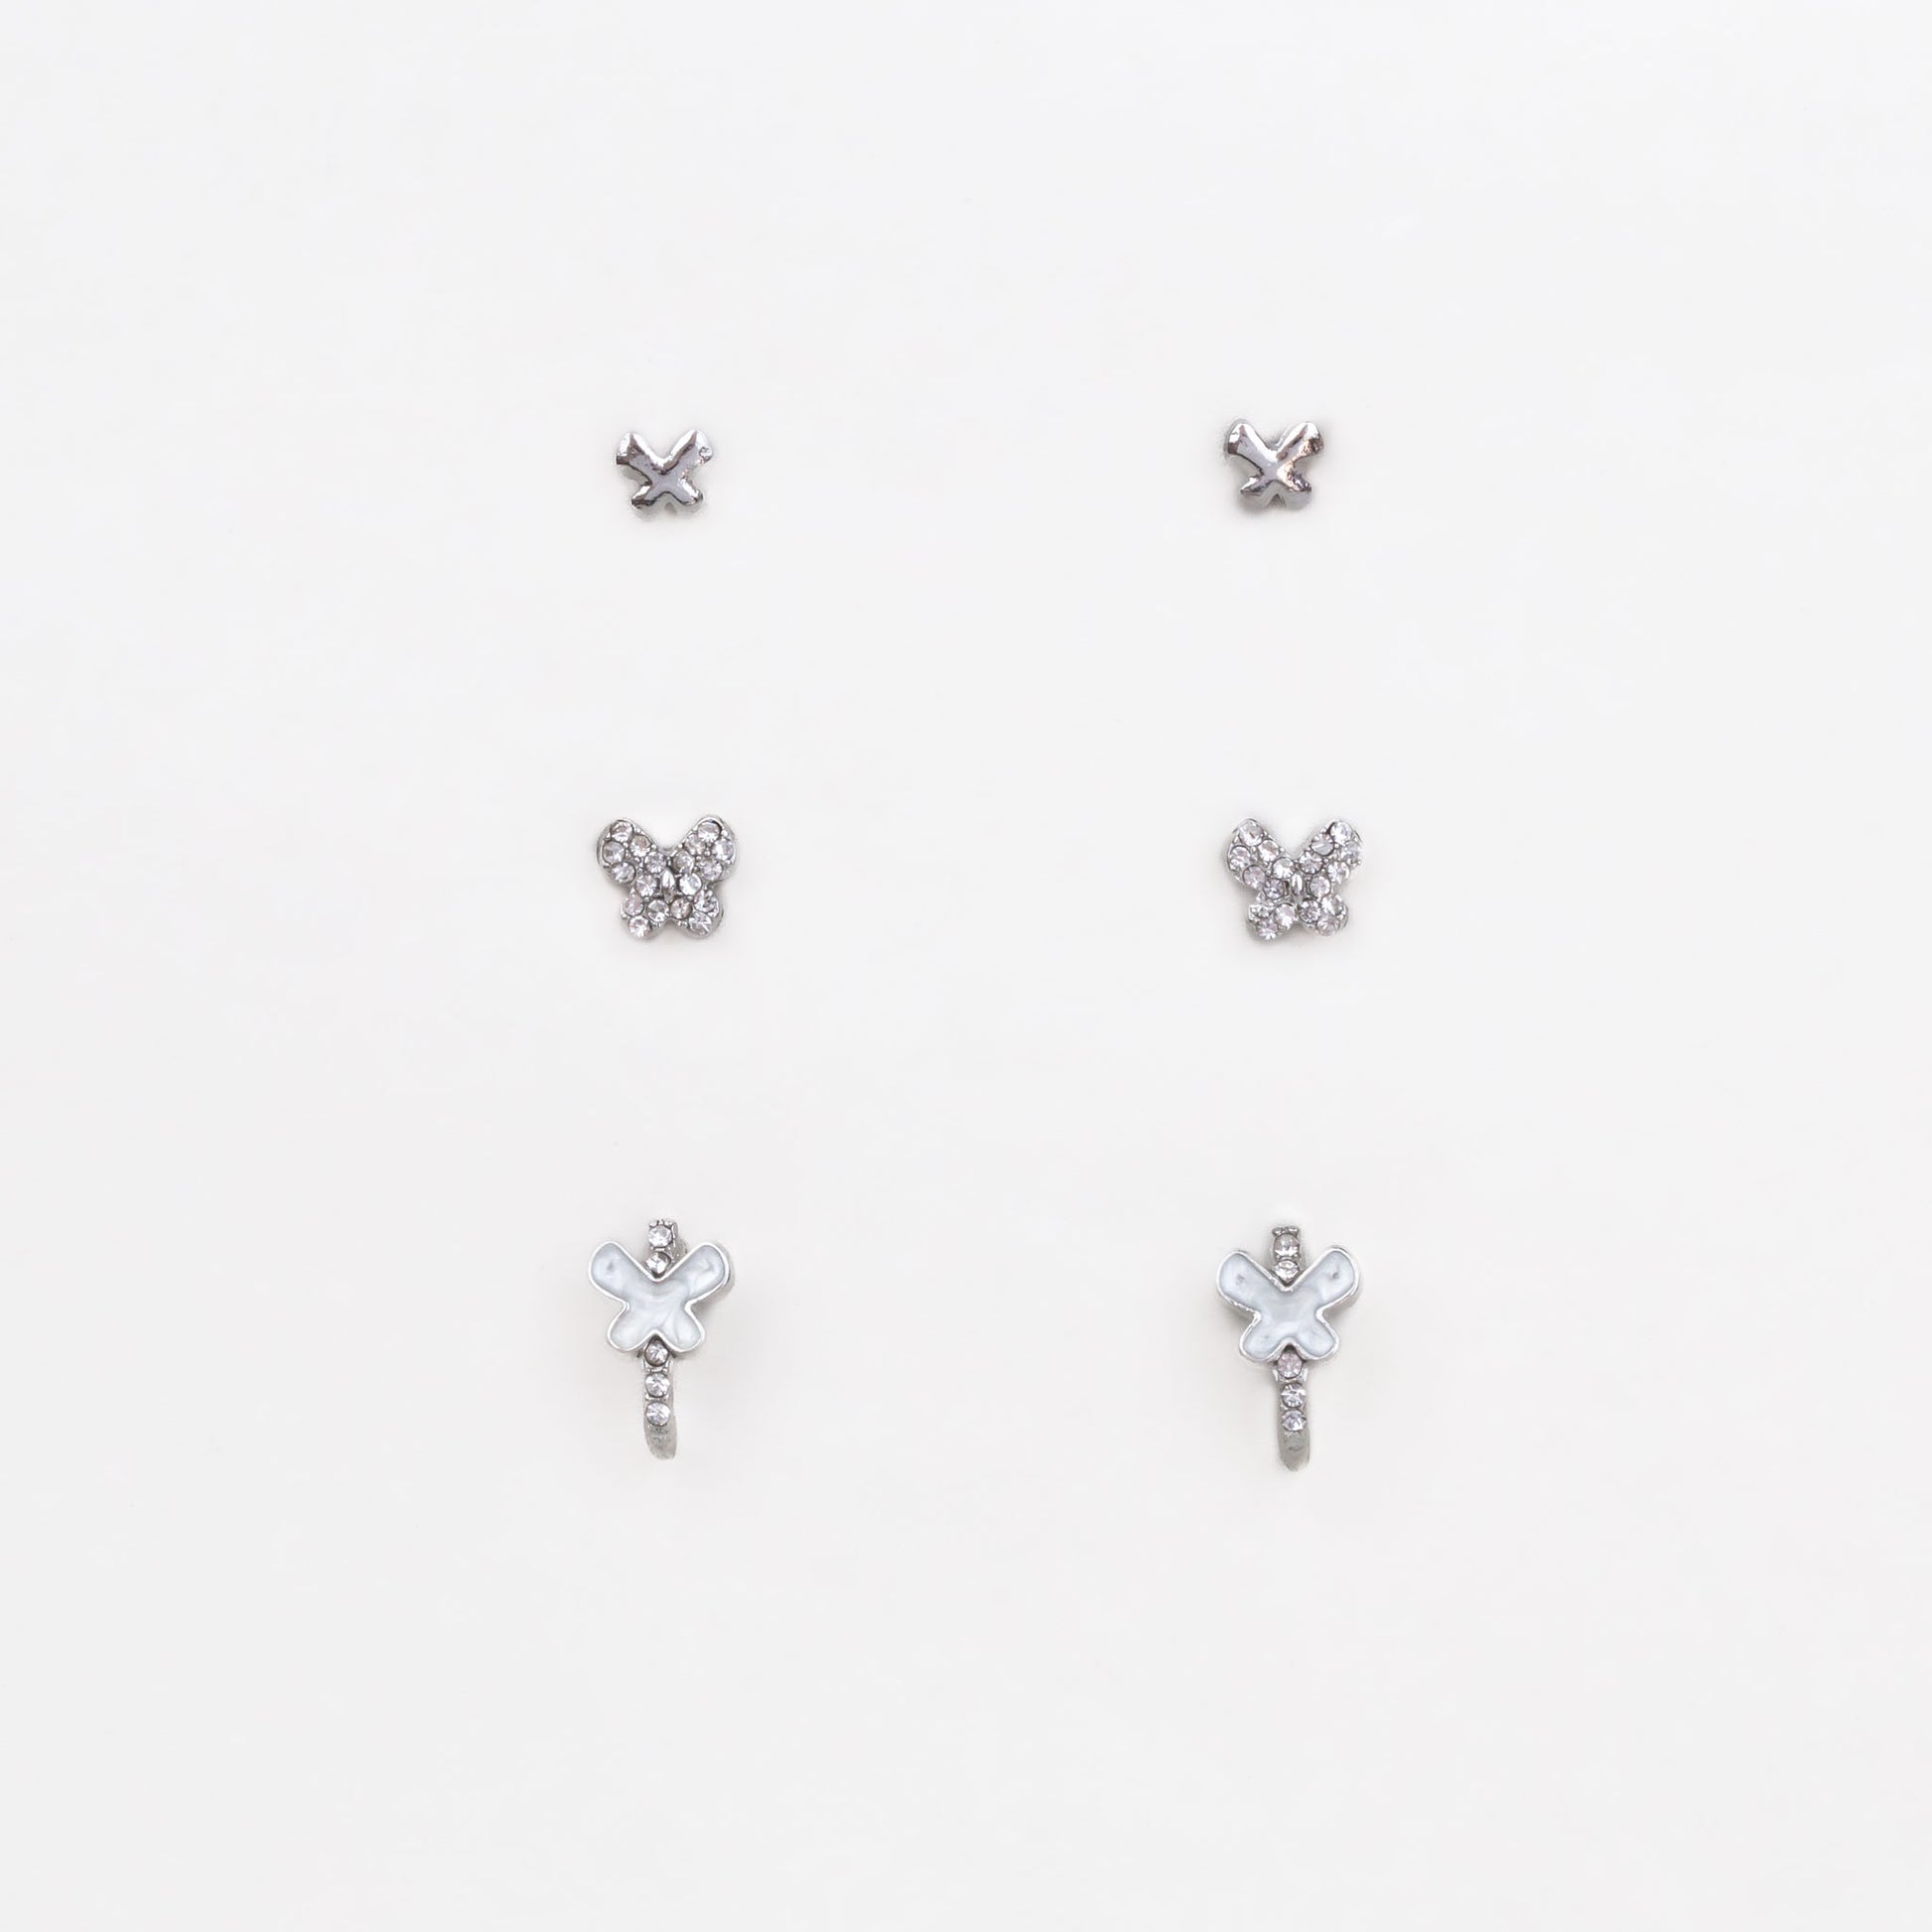 Cercei mici cu forme de fluturi și ștrasuri, set 3 perechi - Argintiu